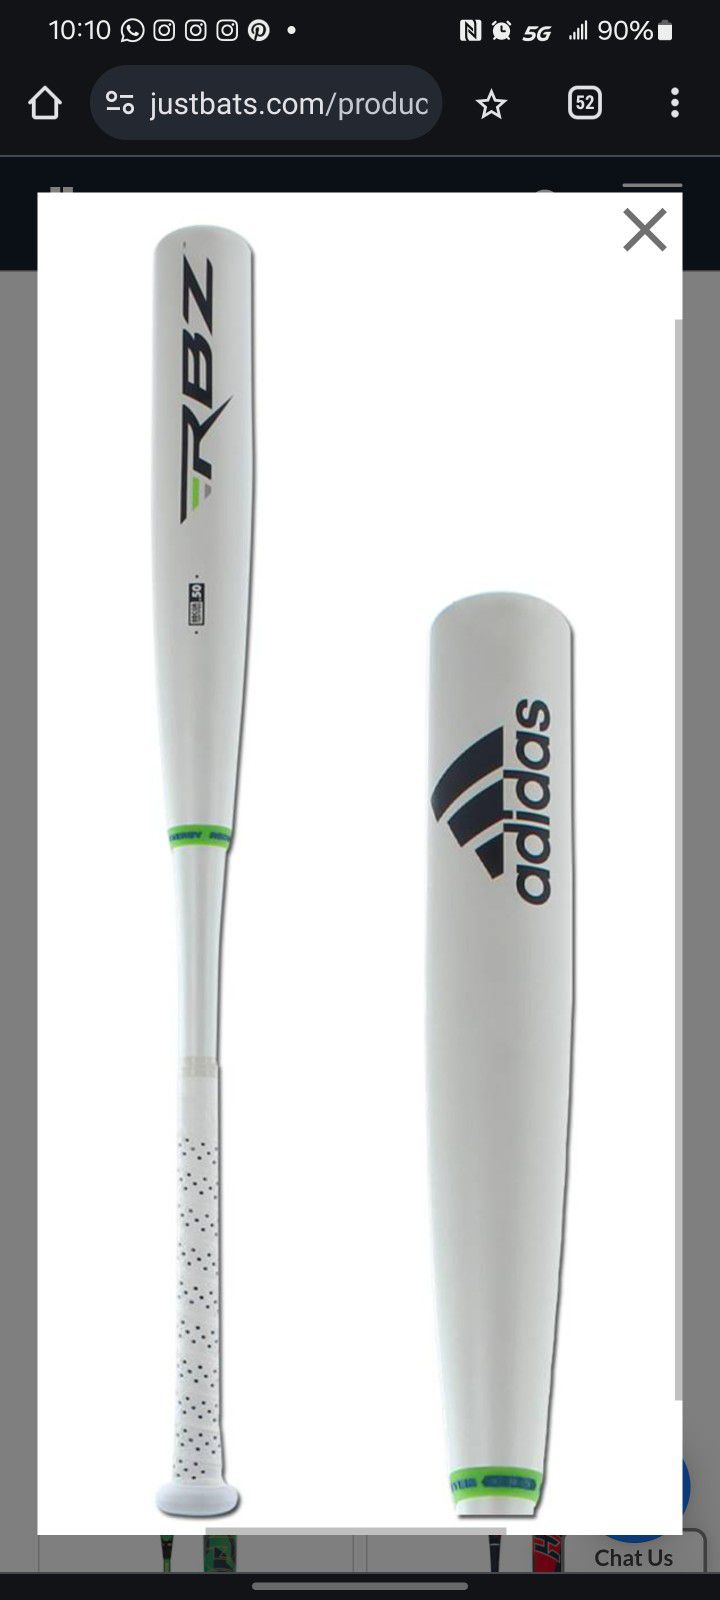 Adidas EQT X3 RBZ RocketBallz BBCOR Baseball Bat: X3 RBZ
